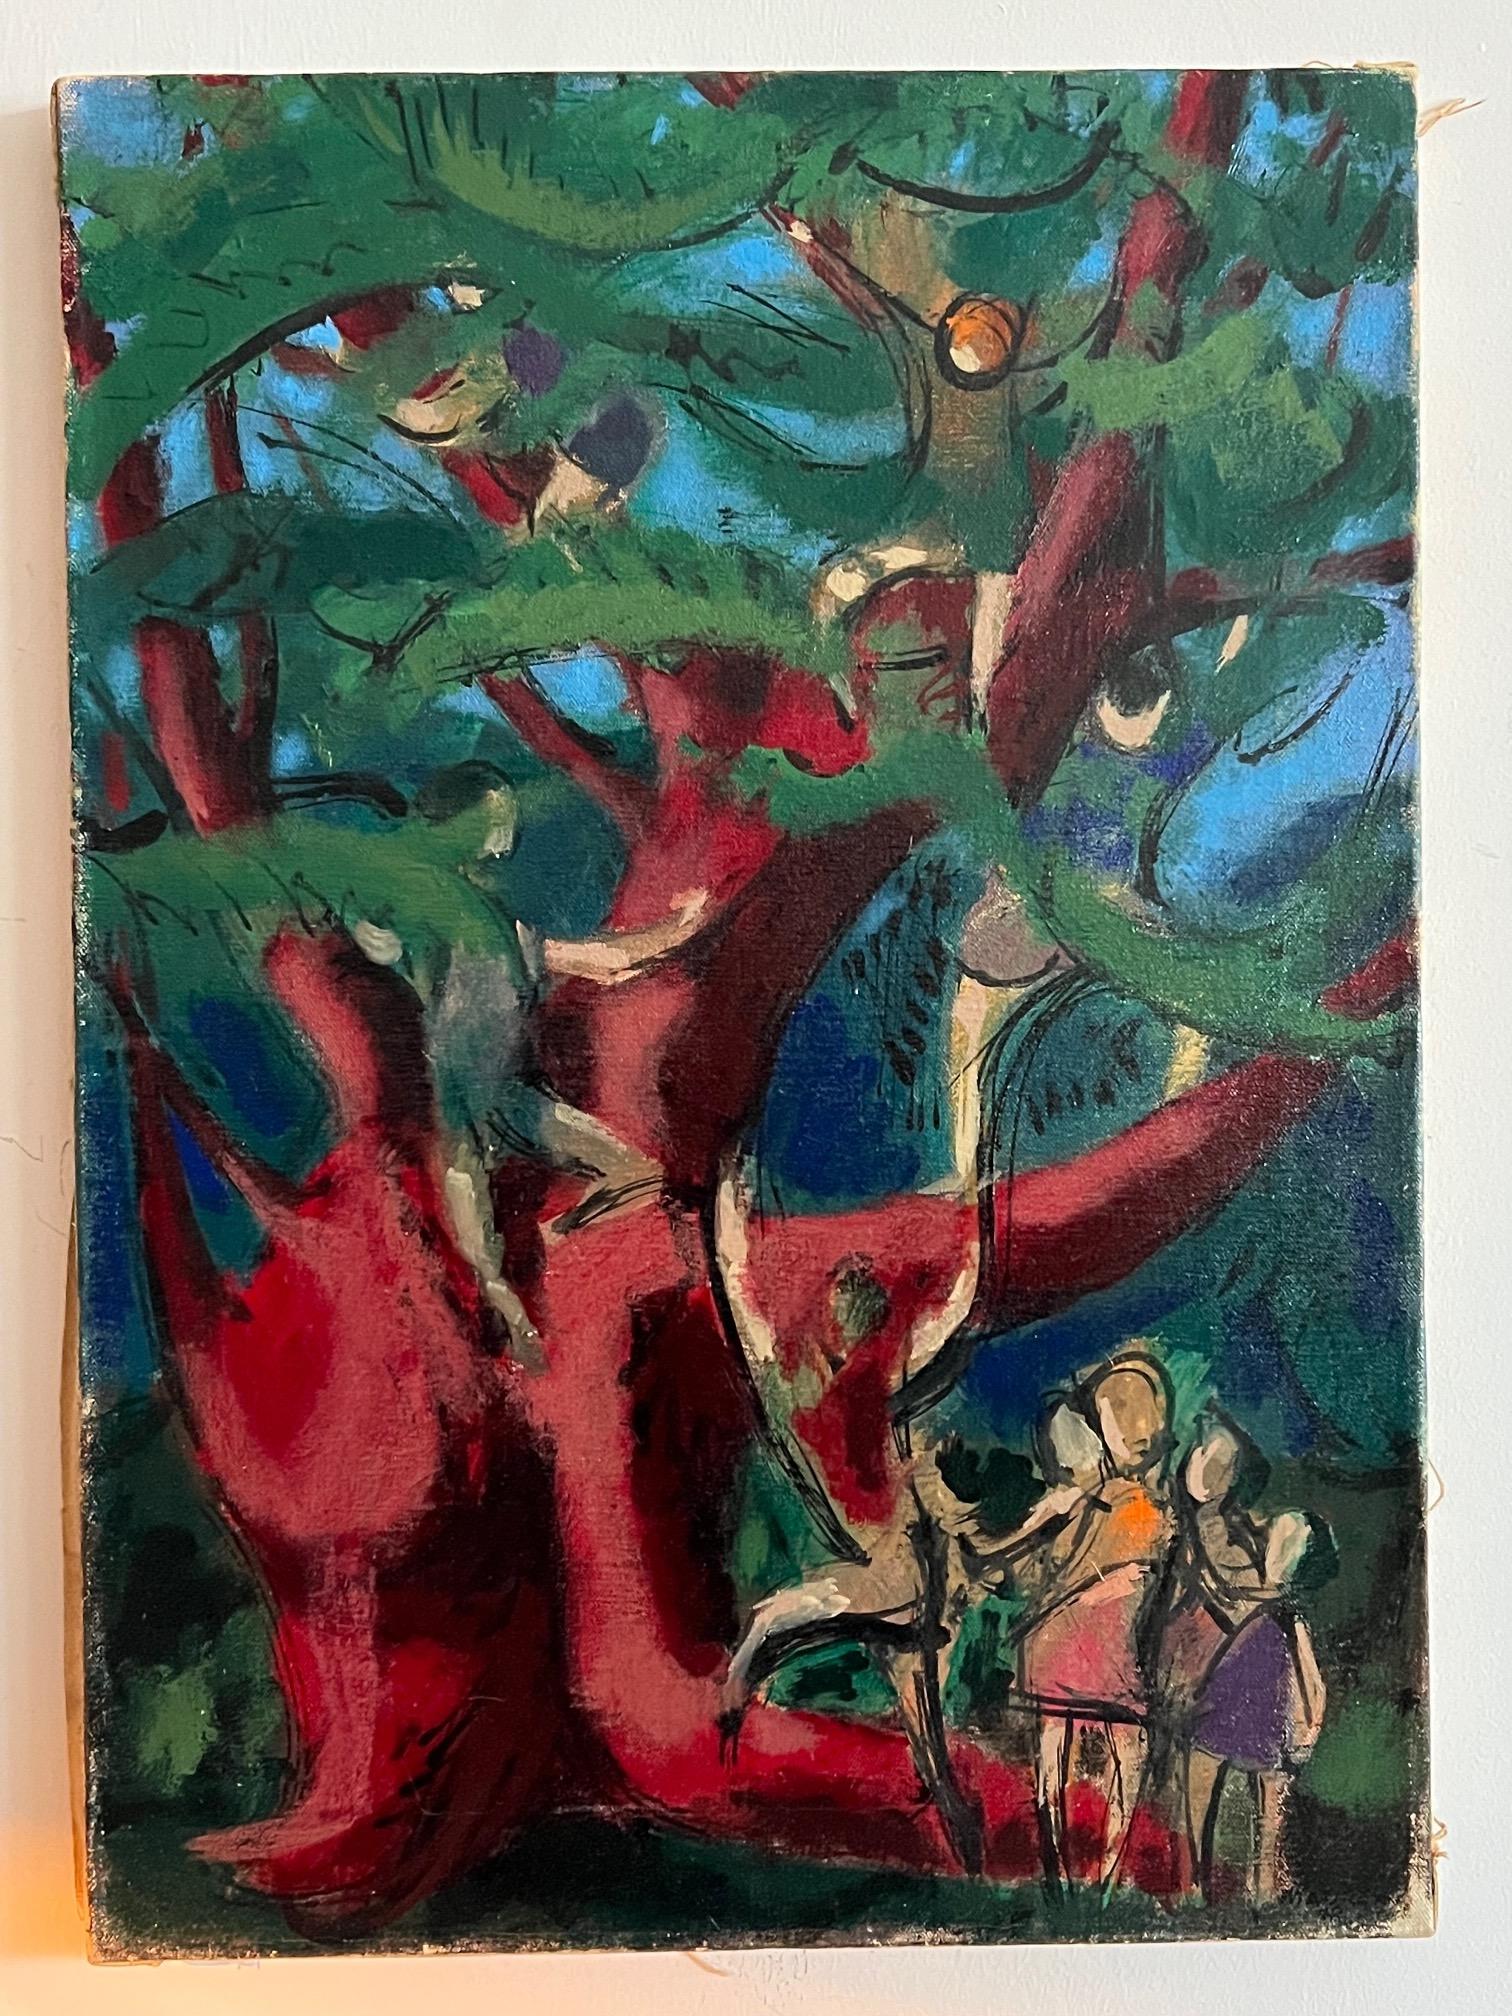 Charmante peinture à l'huile réalisée par le célèbre artiste de Washington DC Leonard Maurer, vers 1948. Représentation d'enfants grimpant aux arbres. Un merveilleux sens de la couleur et un véritable sentiment de milieu de siècle dans le travail de